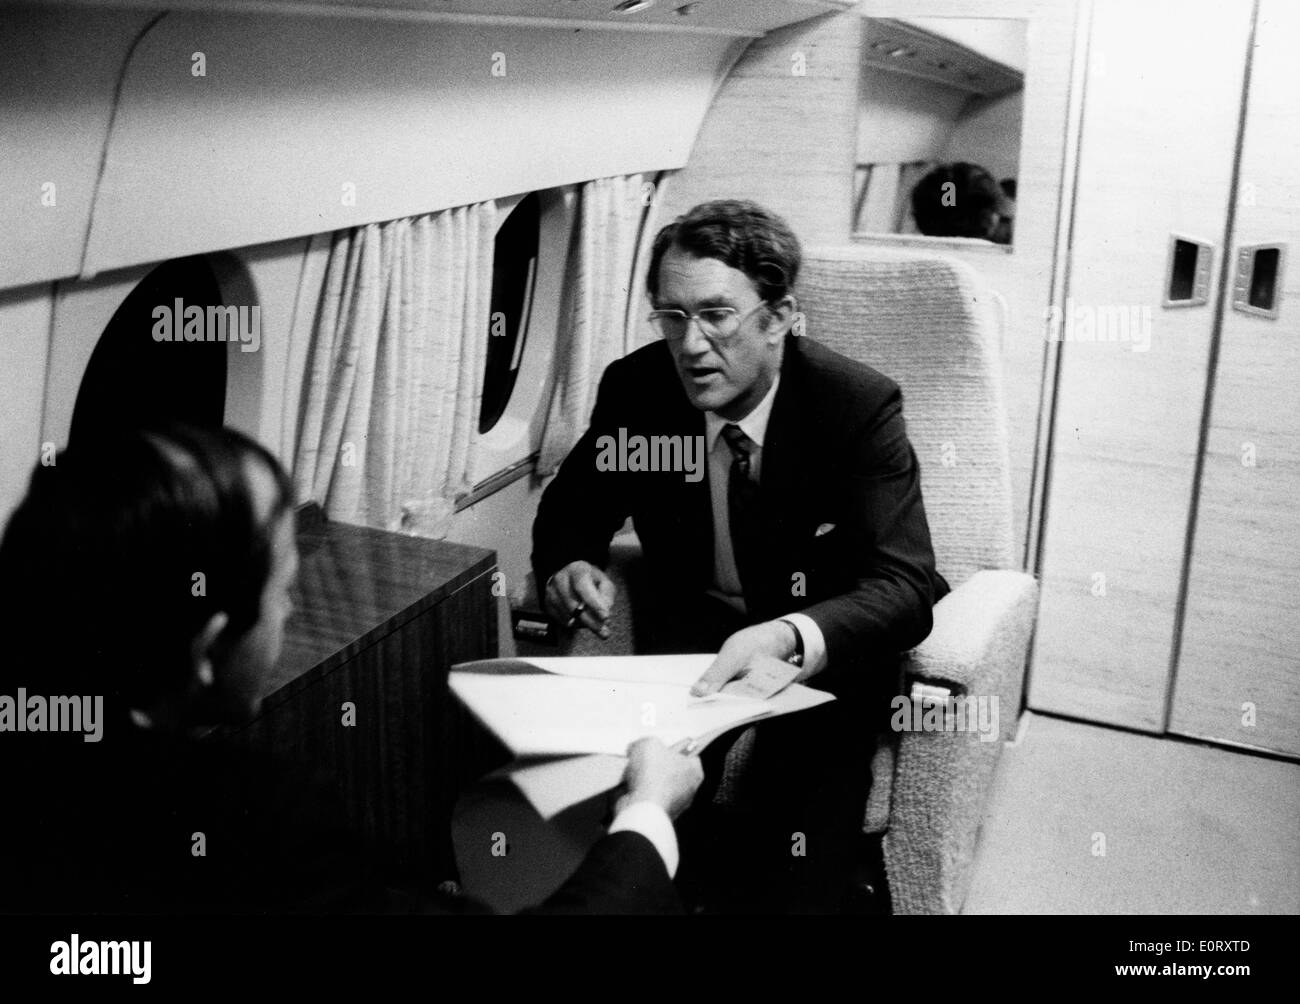 Australischer Politiker MALCOLM FRAZER, spricht jemand Recht in einem Flugzeug. Stockfoto